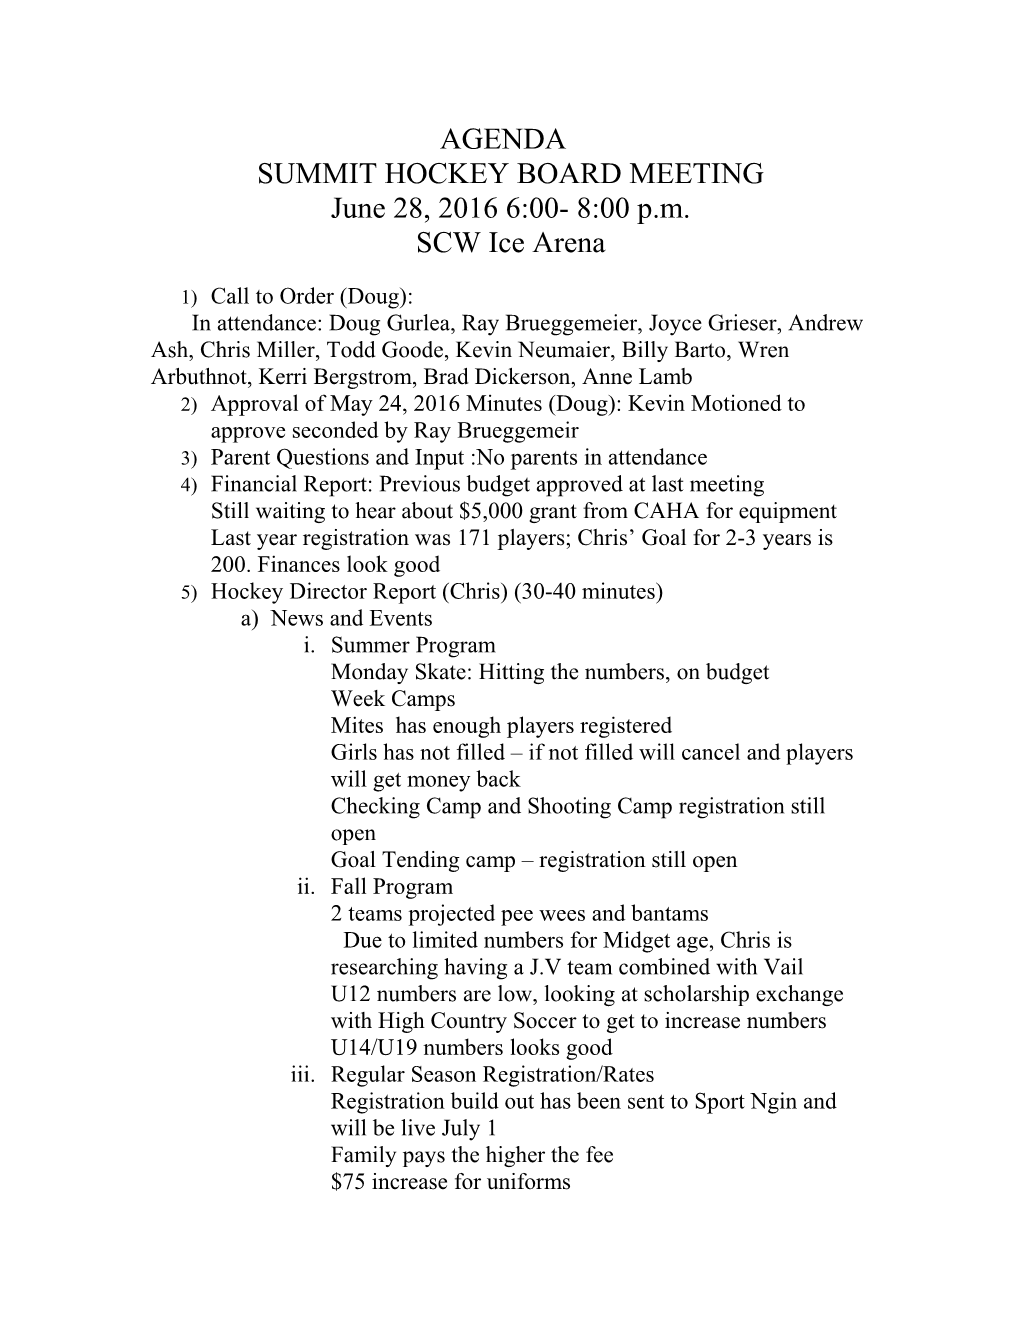 Summit Hockey Board Meeting